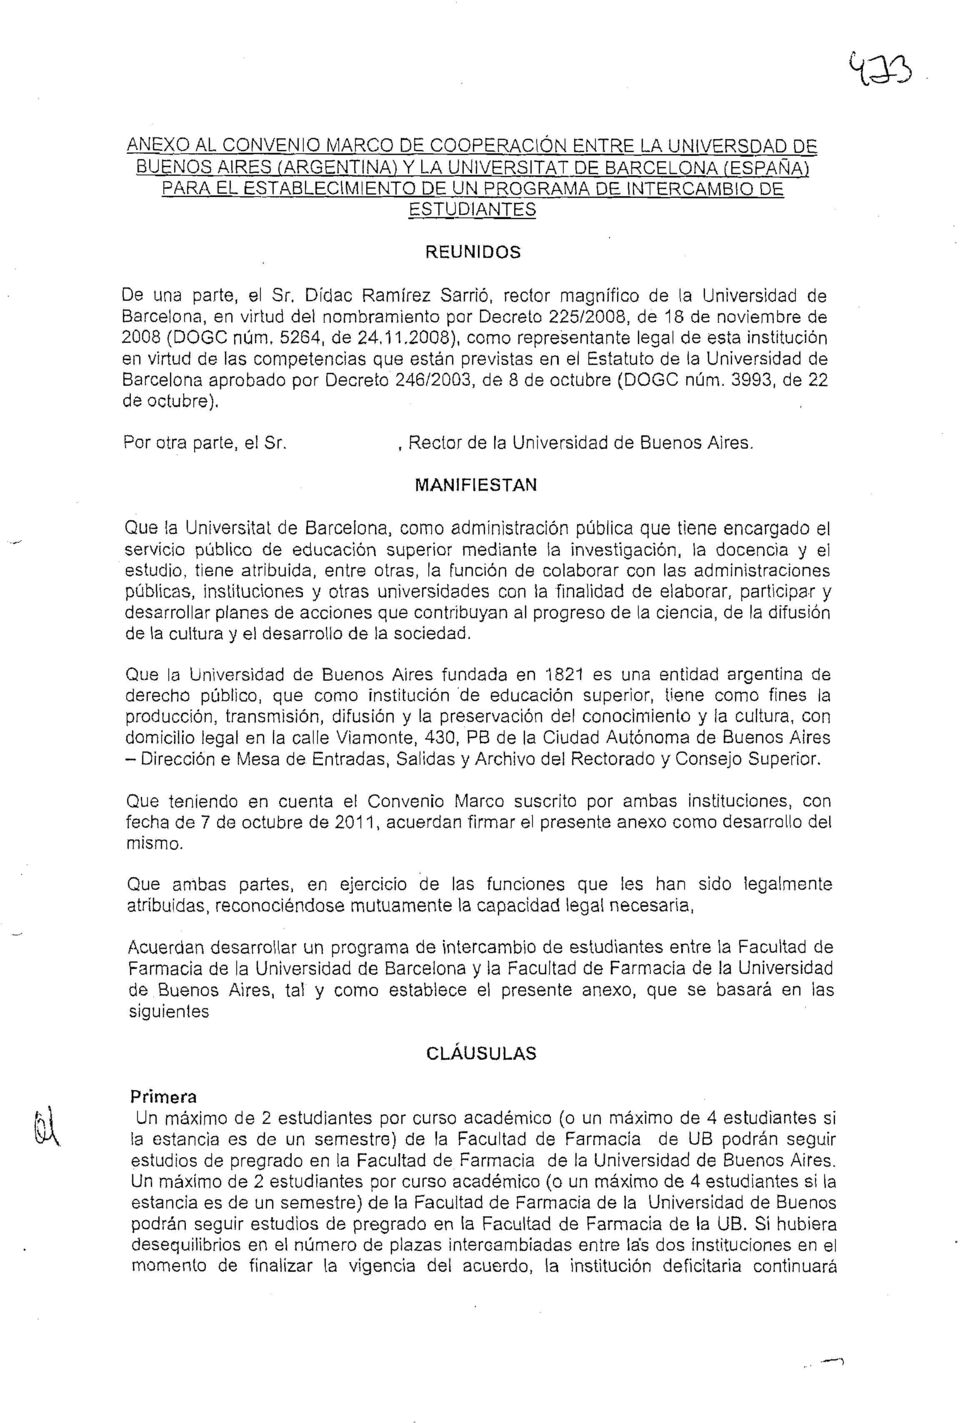 2008), como representante legal de esta institucion en virtucl de las competencias que estan previstas en el Estatuto de la Universidad de Barcelona aprobado por Decreto 24612003, de 8 de octllbre